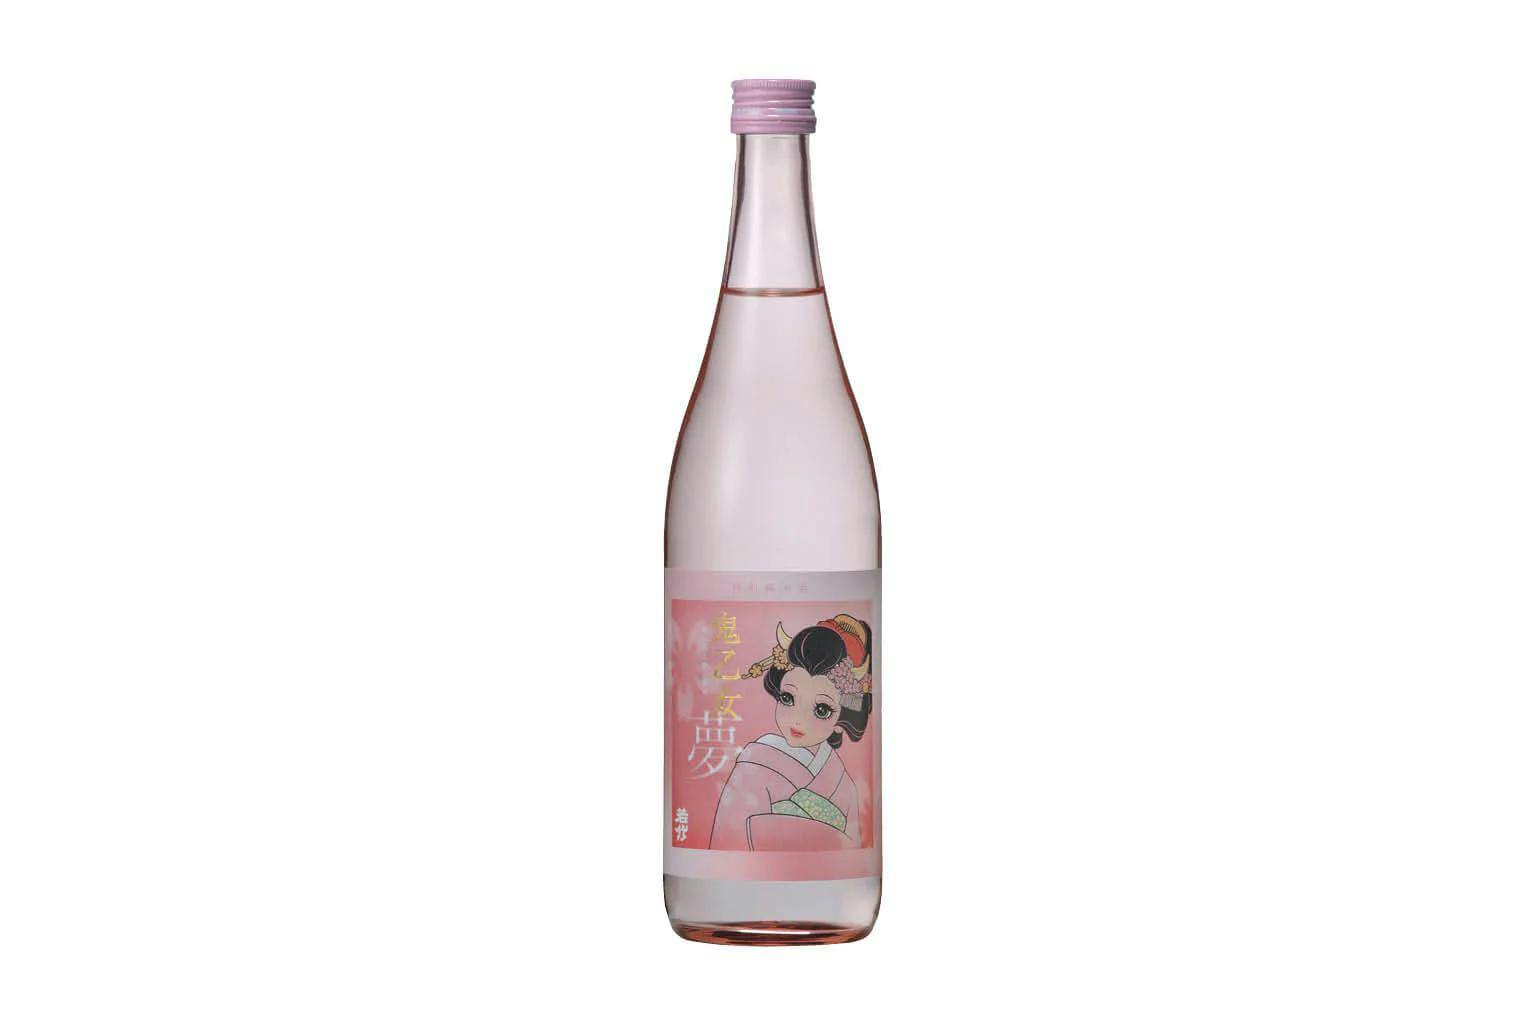 Bottle of Wakatake Oniotome Yume